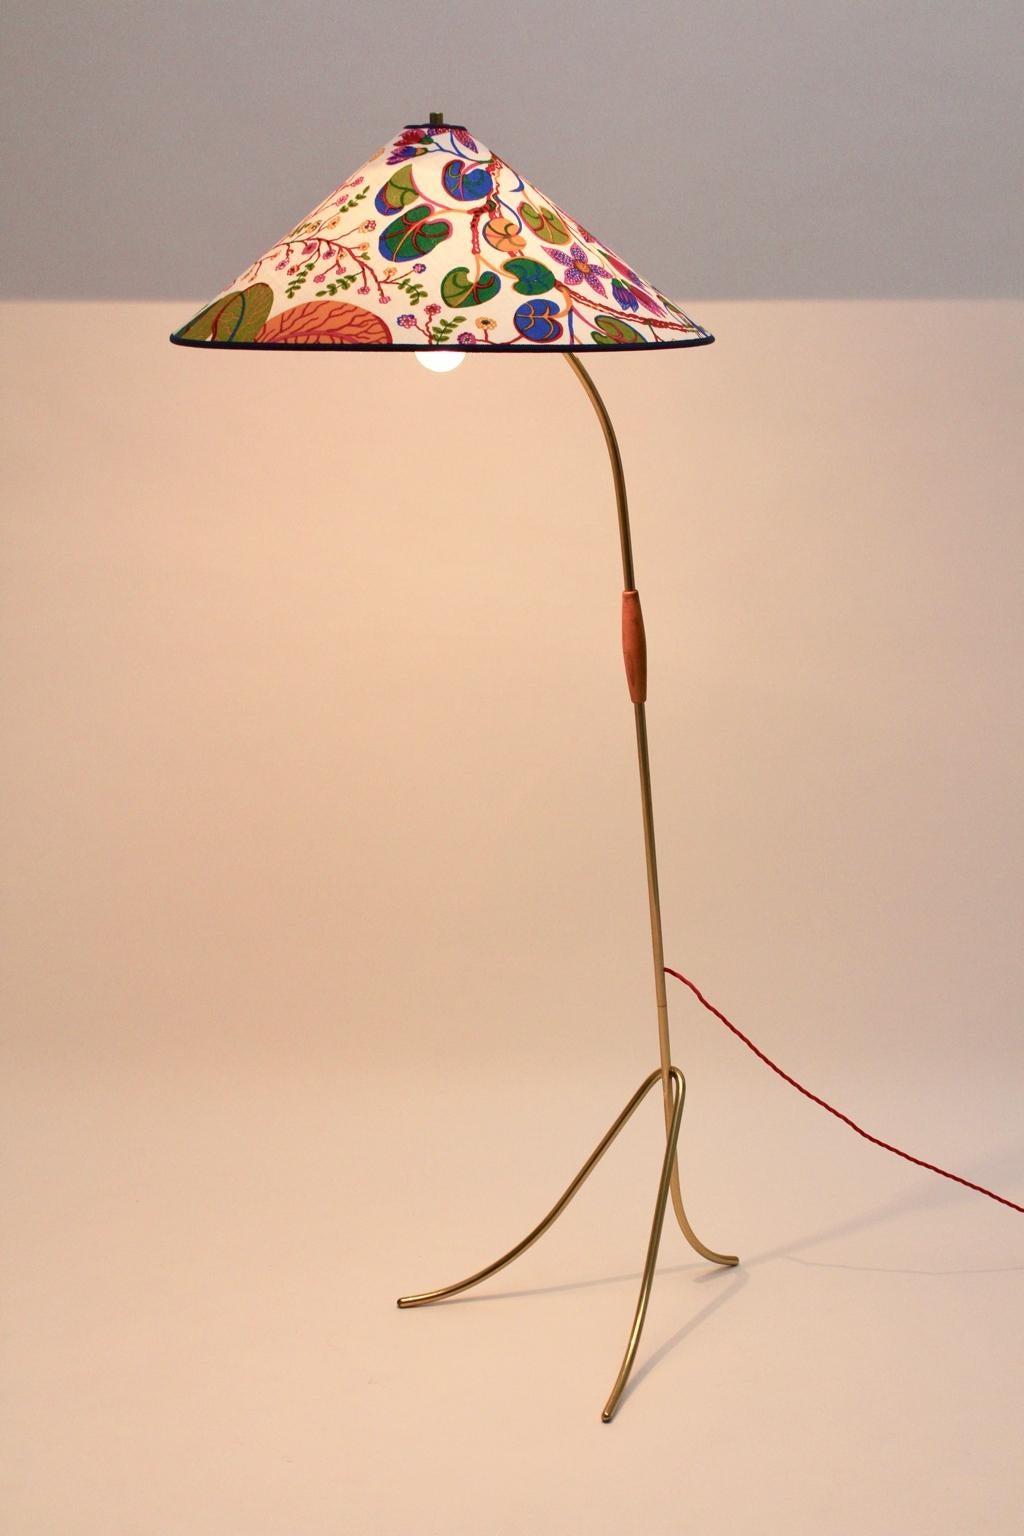 Rupert Nikoll hat dieses schöne Beispiel einer Wiener Stehlampe aus der Mid-Century Modern-Ära der 1950er Jahre entworfen und ausgeführt. Die Stehlampe war aus Messingrohr und einem Holzgriff gefertigt.
Der dreibeinige Sockel dieser Lampe sorgt für